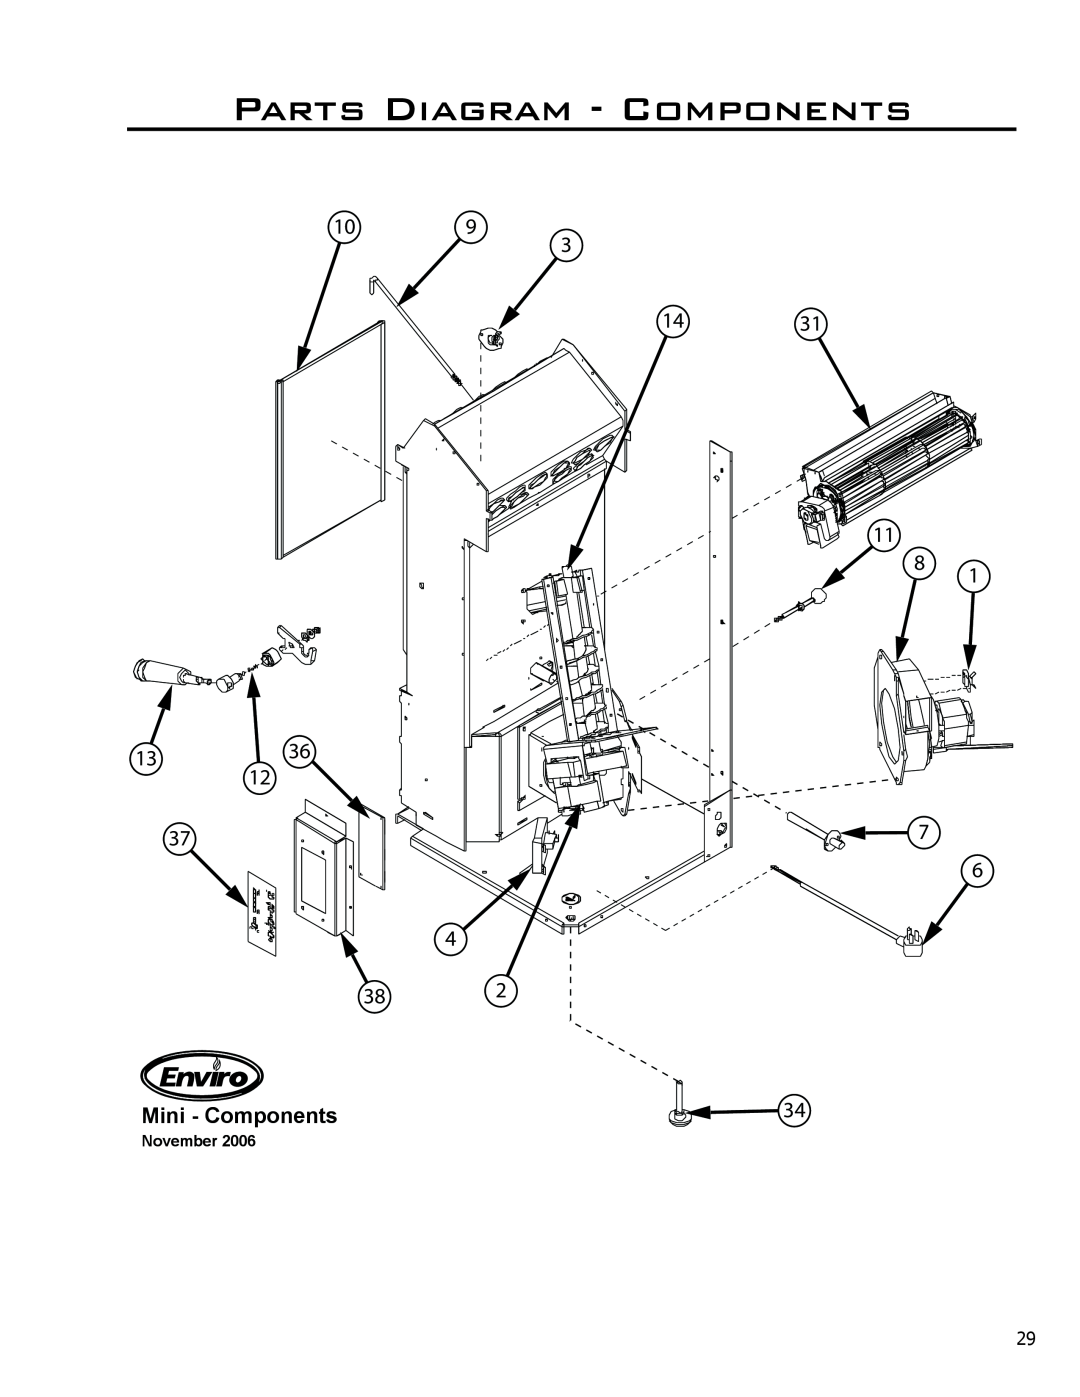 Enviro C-11150 technical manual Parts Diagram - Components, Mini - Components, November 